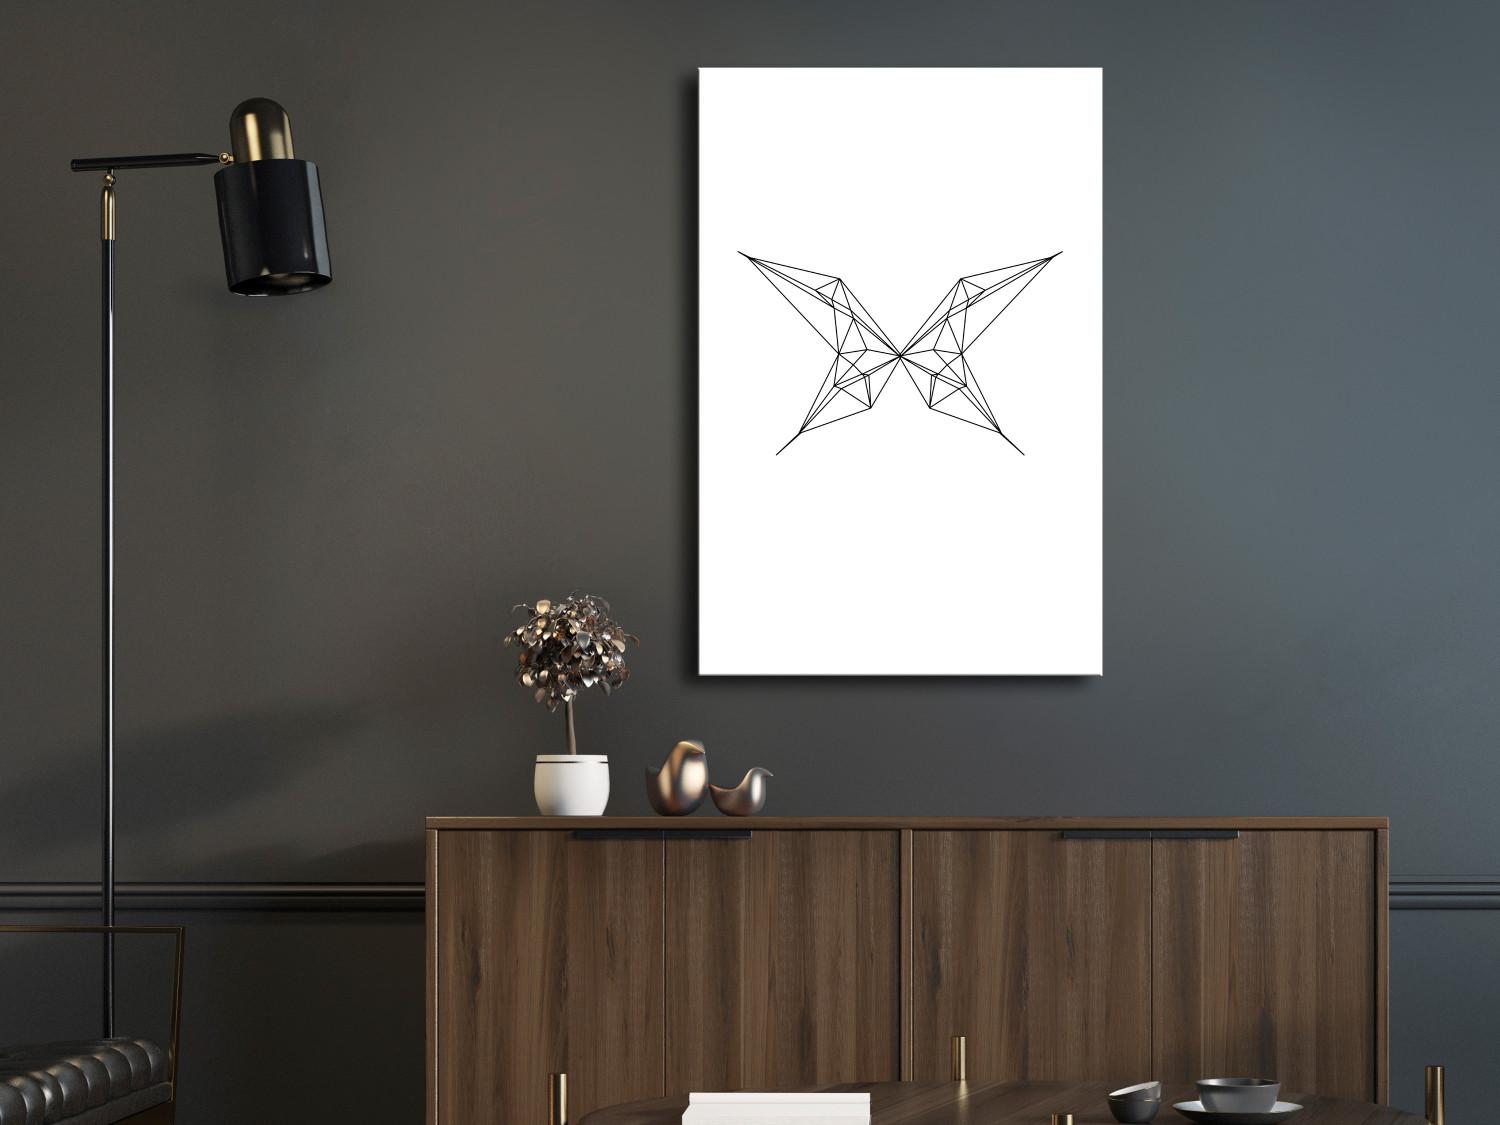 Cuadro decorativo Contornos negros de una mariposa - abstracción geométrica blanca